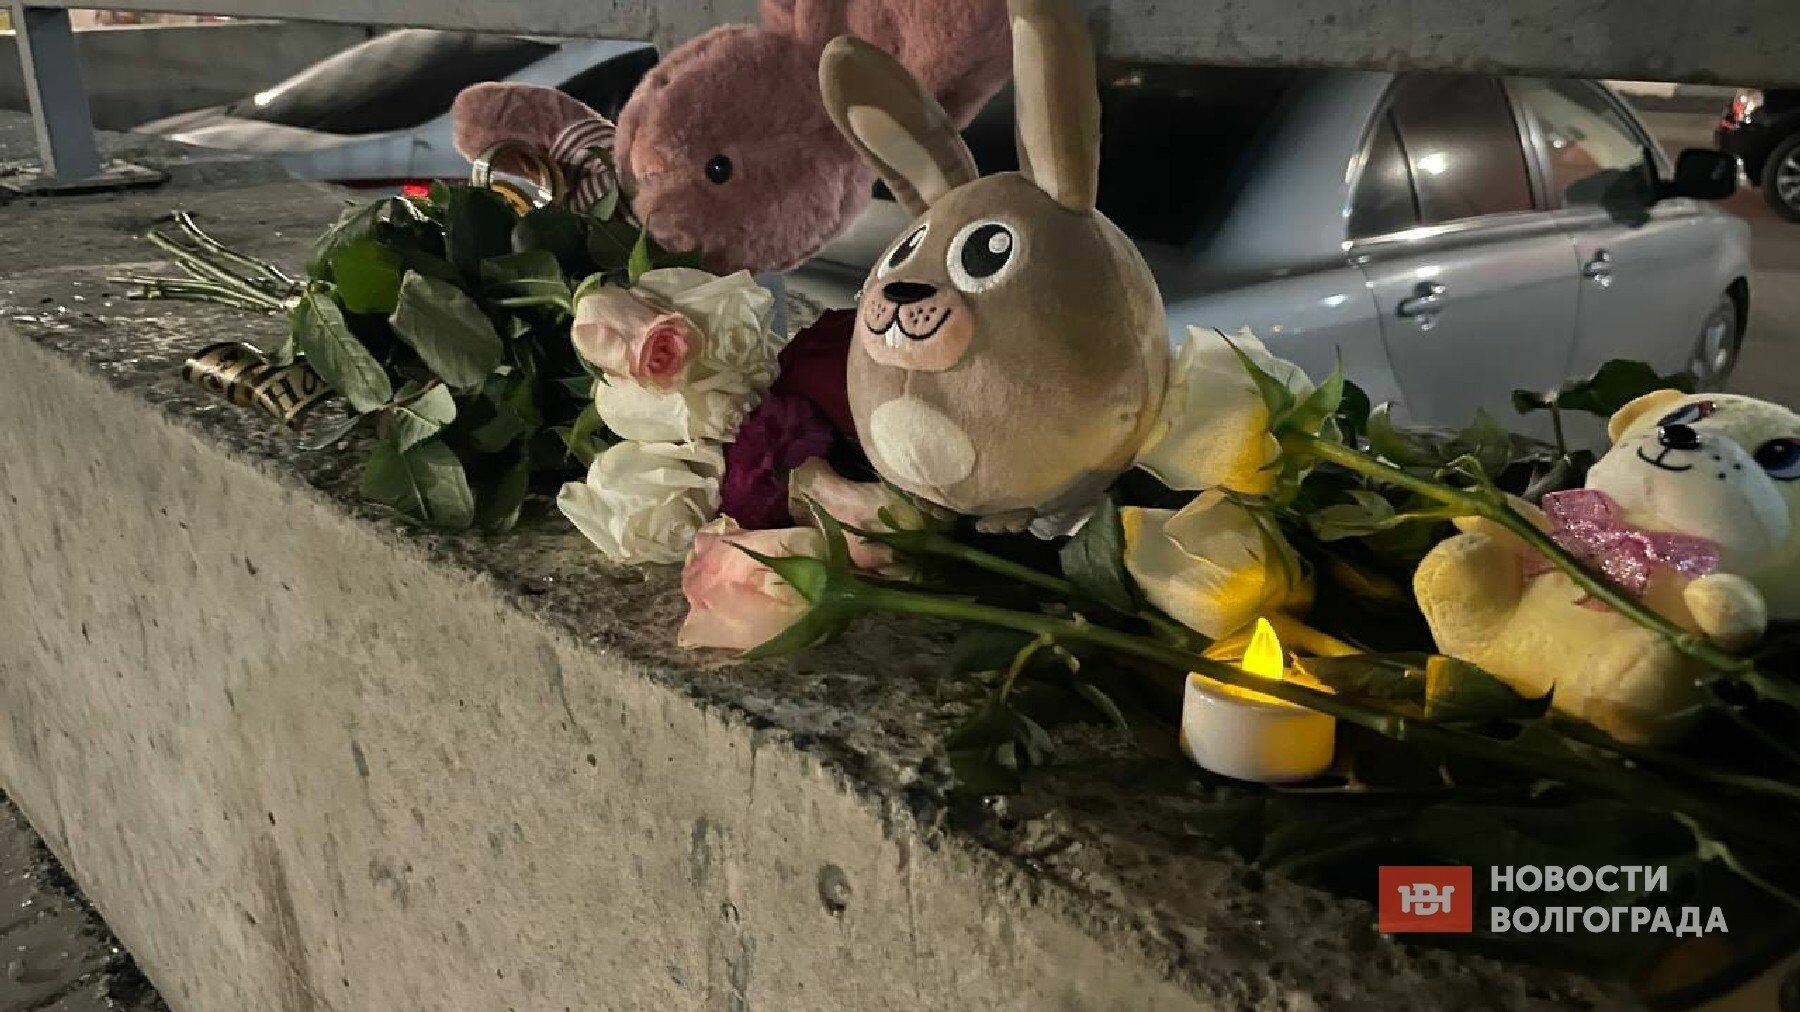 Стихийный мемориал появился на месте гибели ребёнка в Волгограде